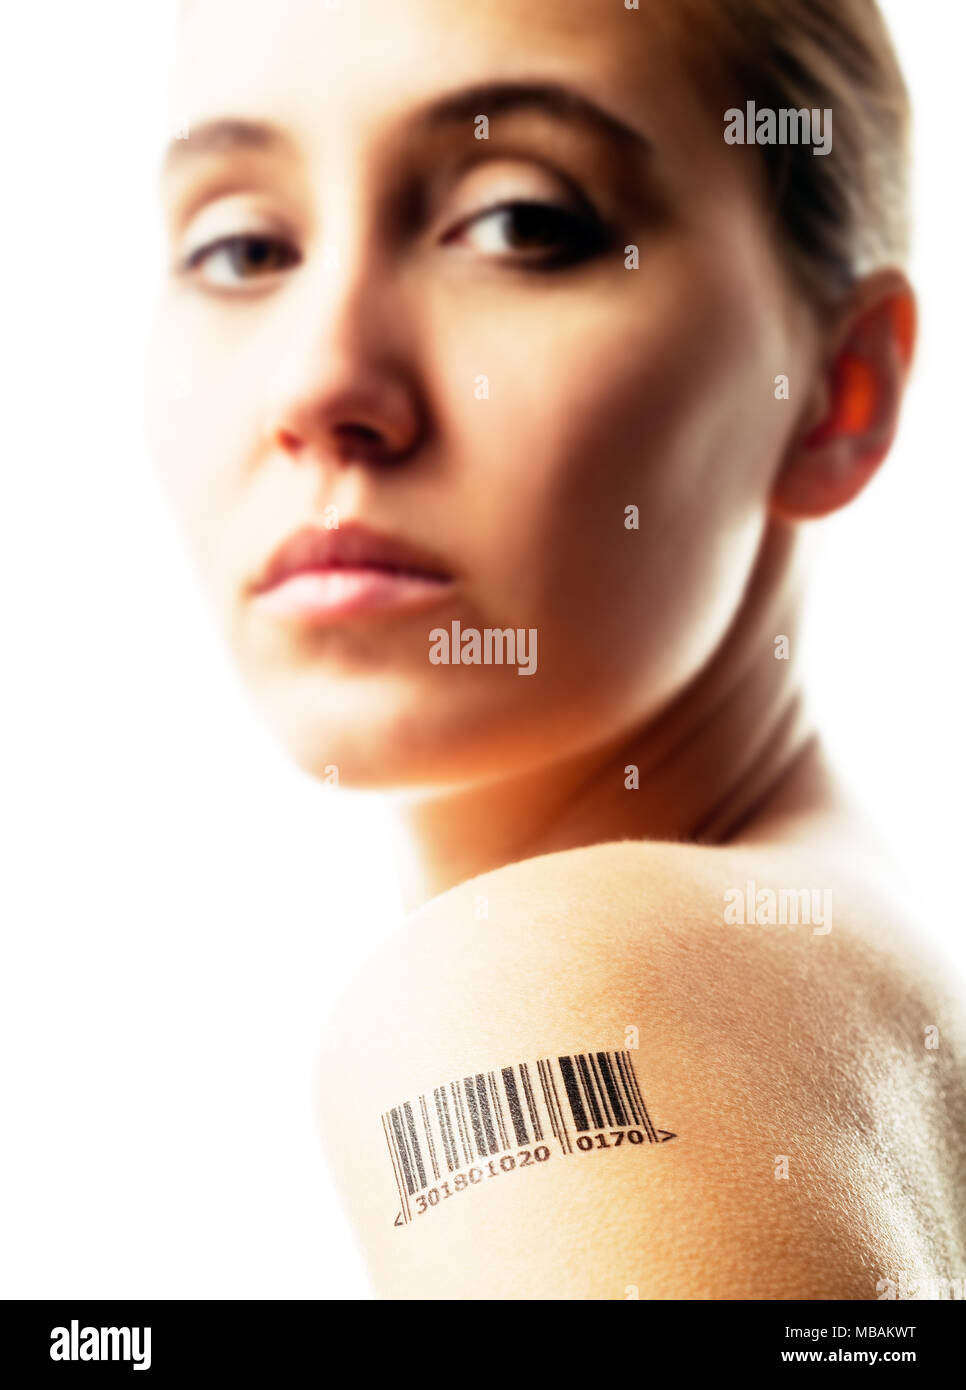 Portrait de femme avec code barre tatouage sur son épaule Banque D'Images